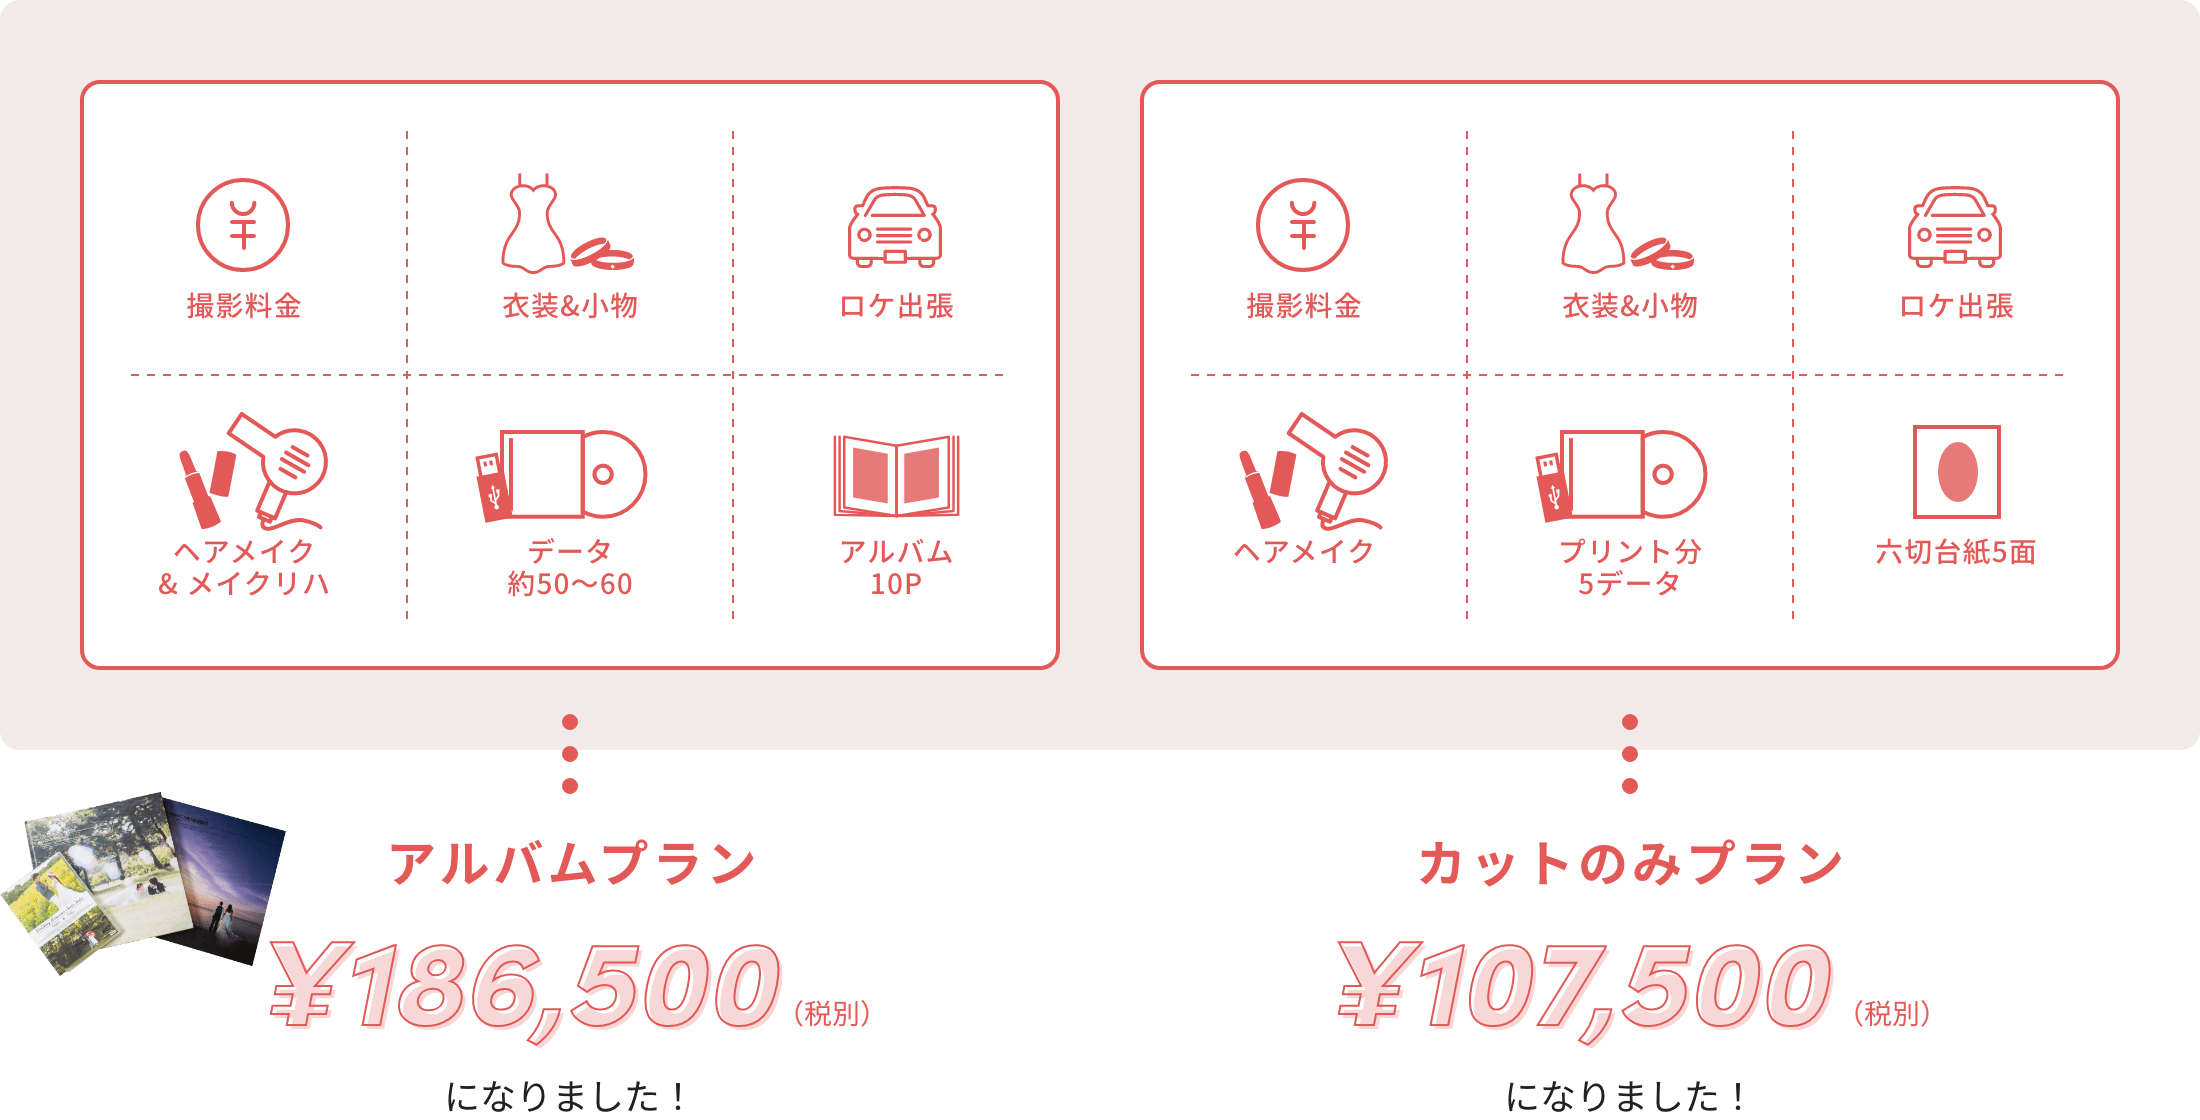 アルバムプラン（データ約50〜60。アルバム10P）は¥186,500（税別）、カットのみプラン（プリント分5データ。六切台紙5面）¥107.500（税別）になりました。